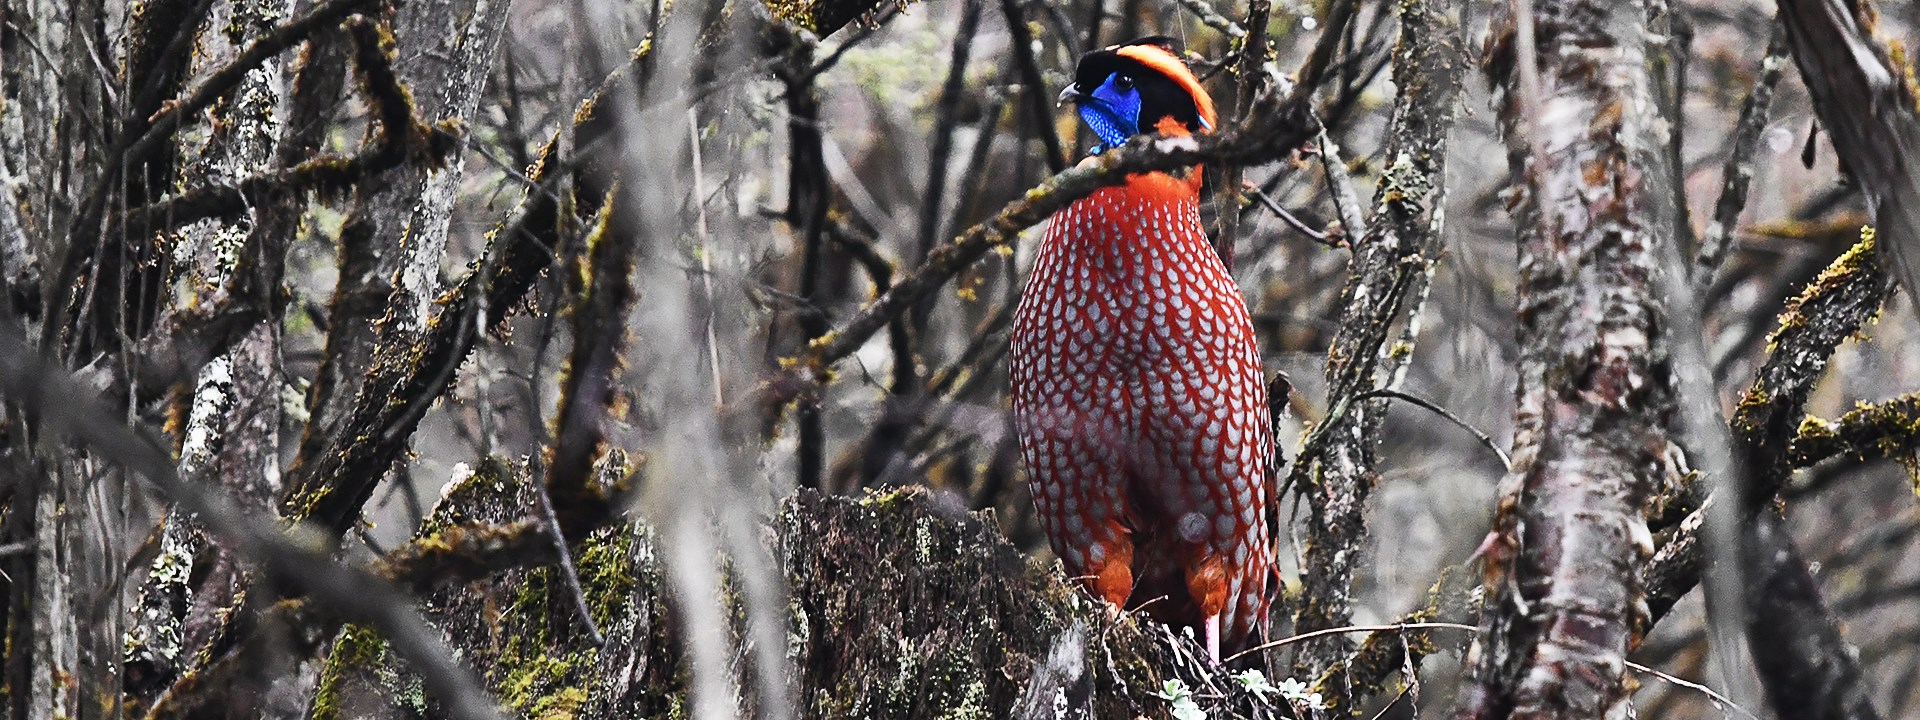 Observación de Aves y Vida Silvestre en la Meseta Qinghai-Tíbet